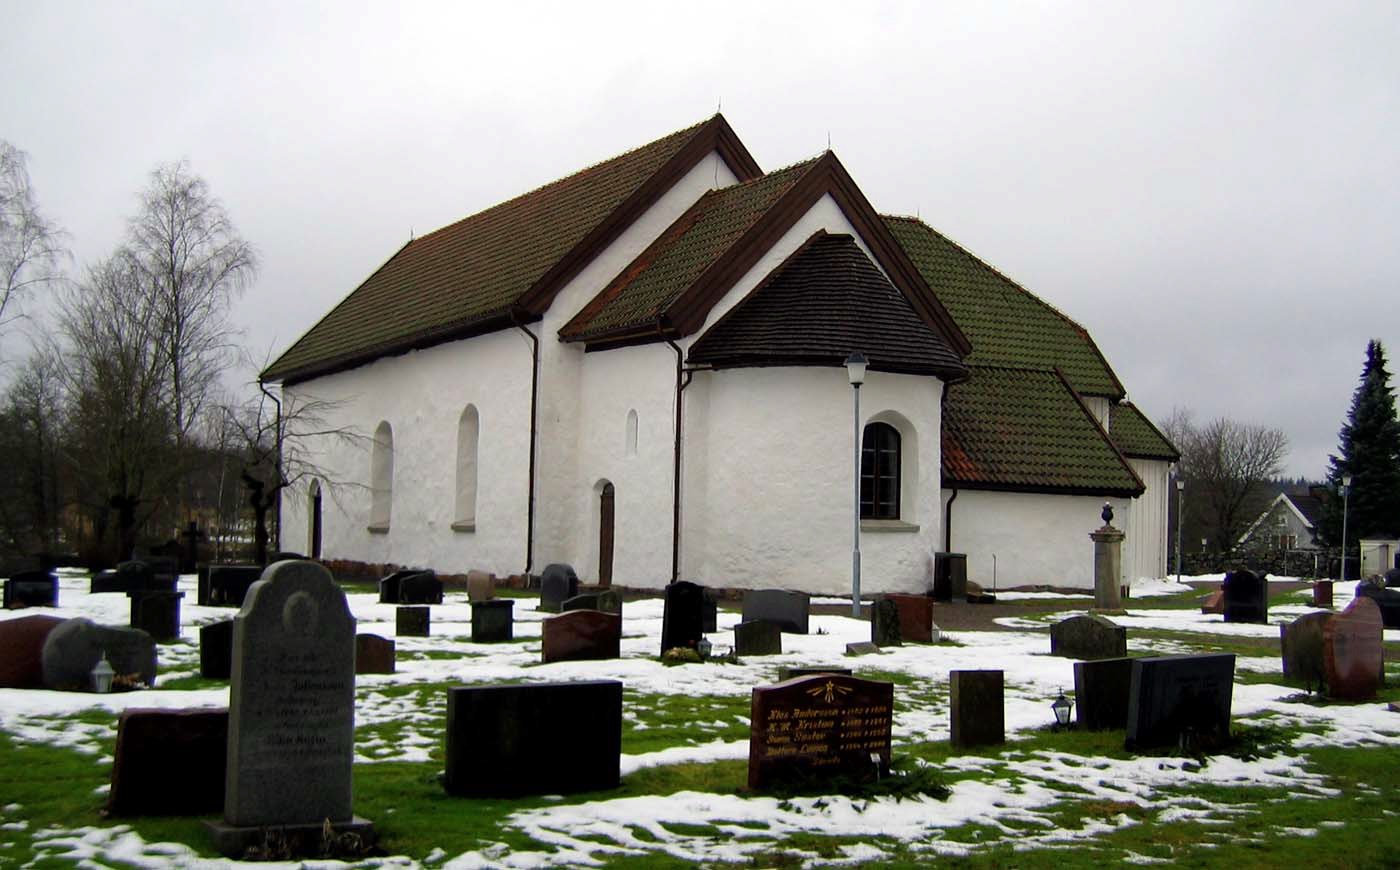 Bringetofta kyrka sedd från sydost så att de medeltida delarna framträder särskilt tydligt.